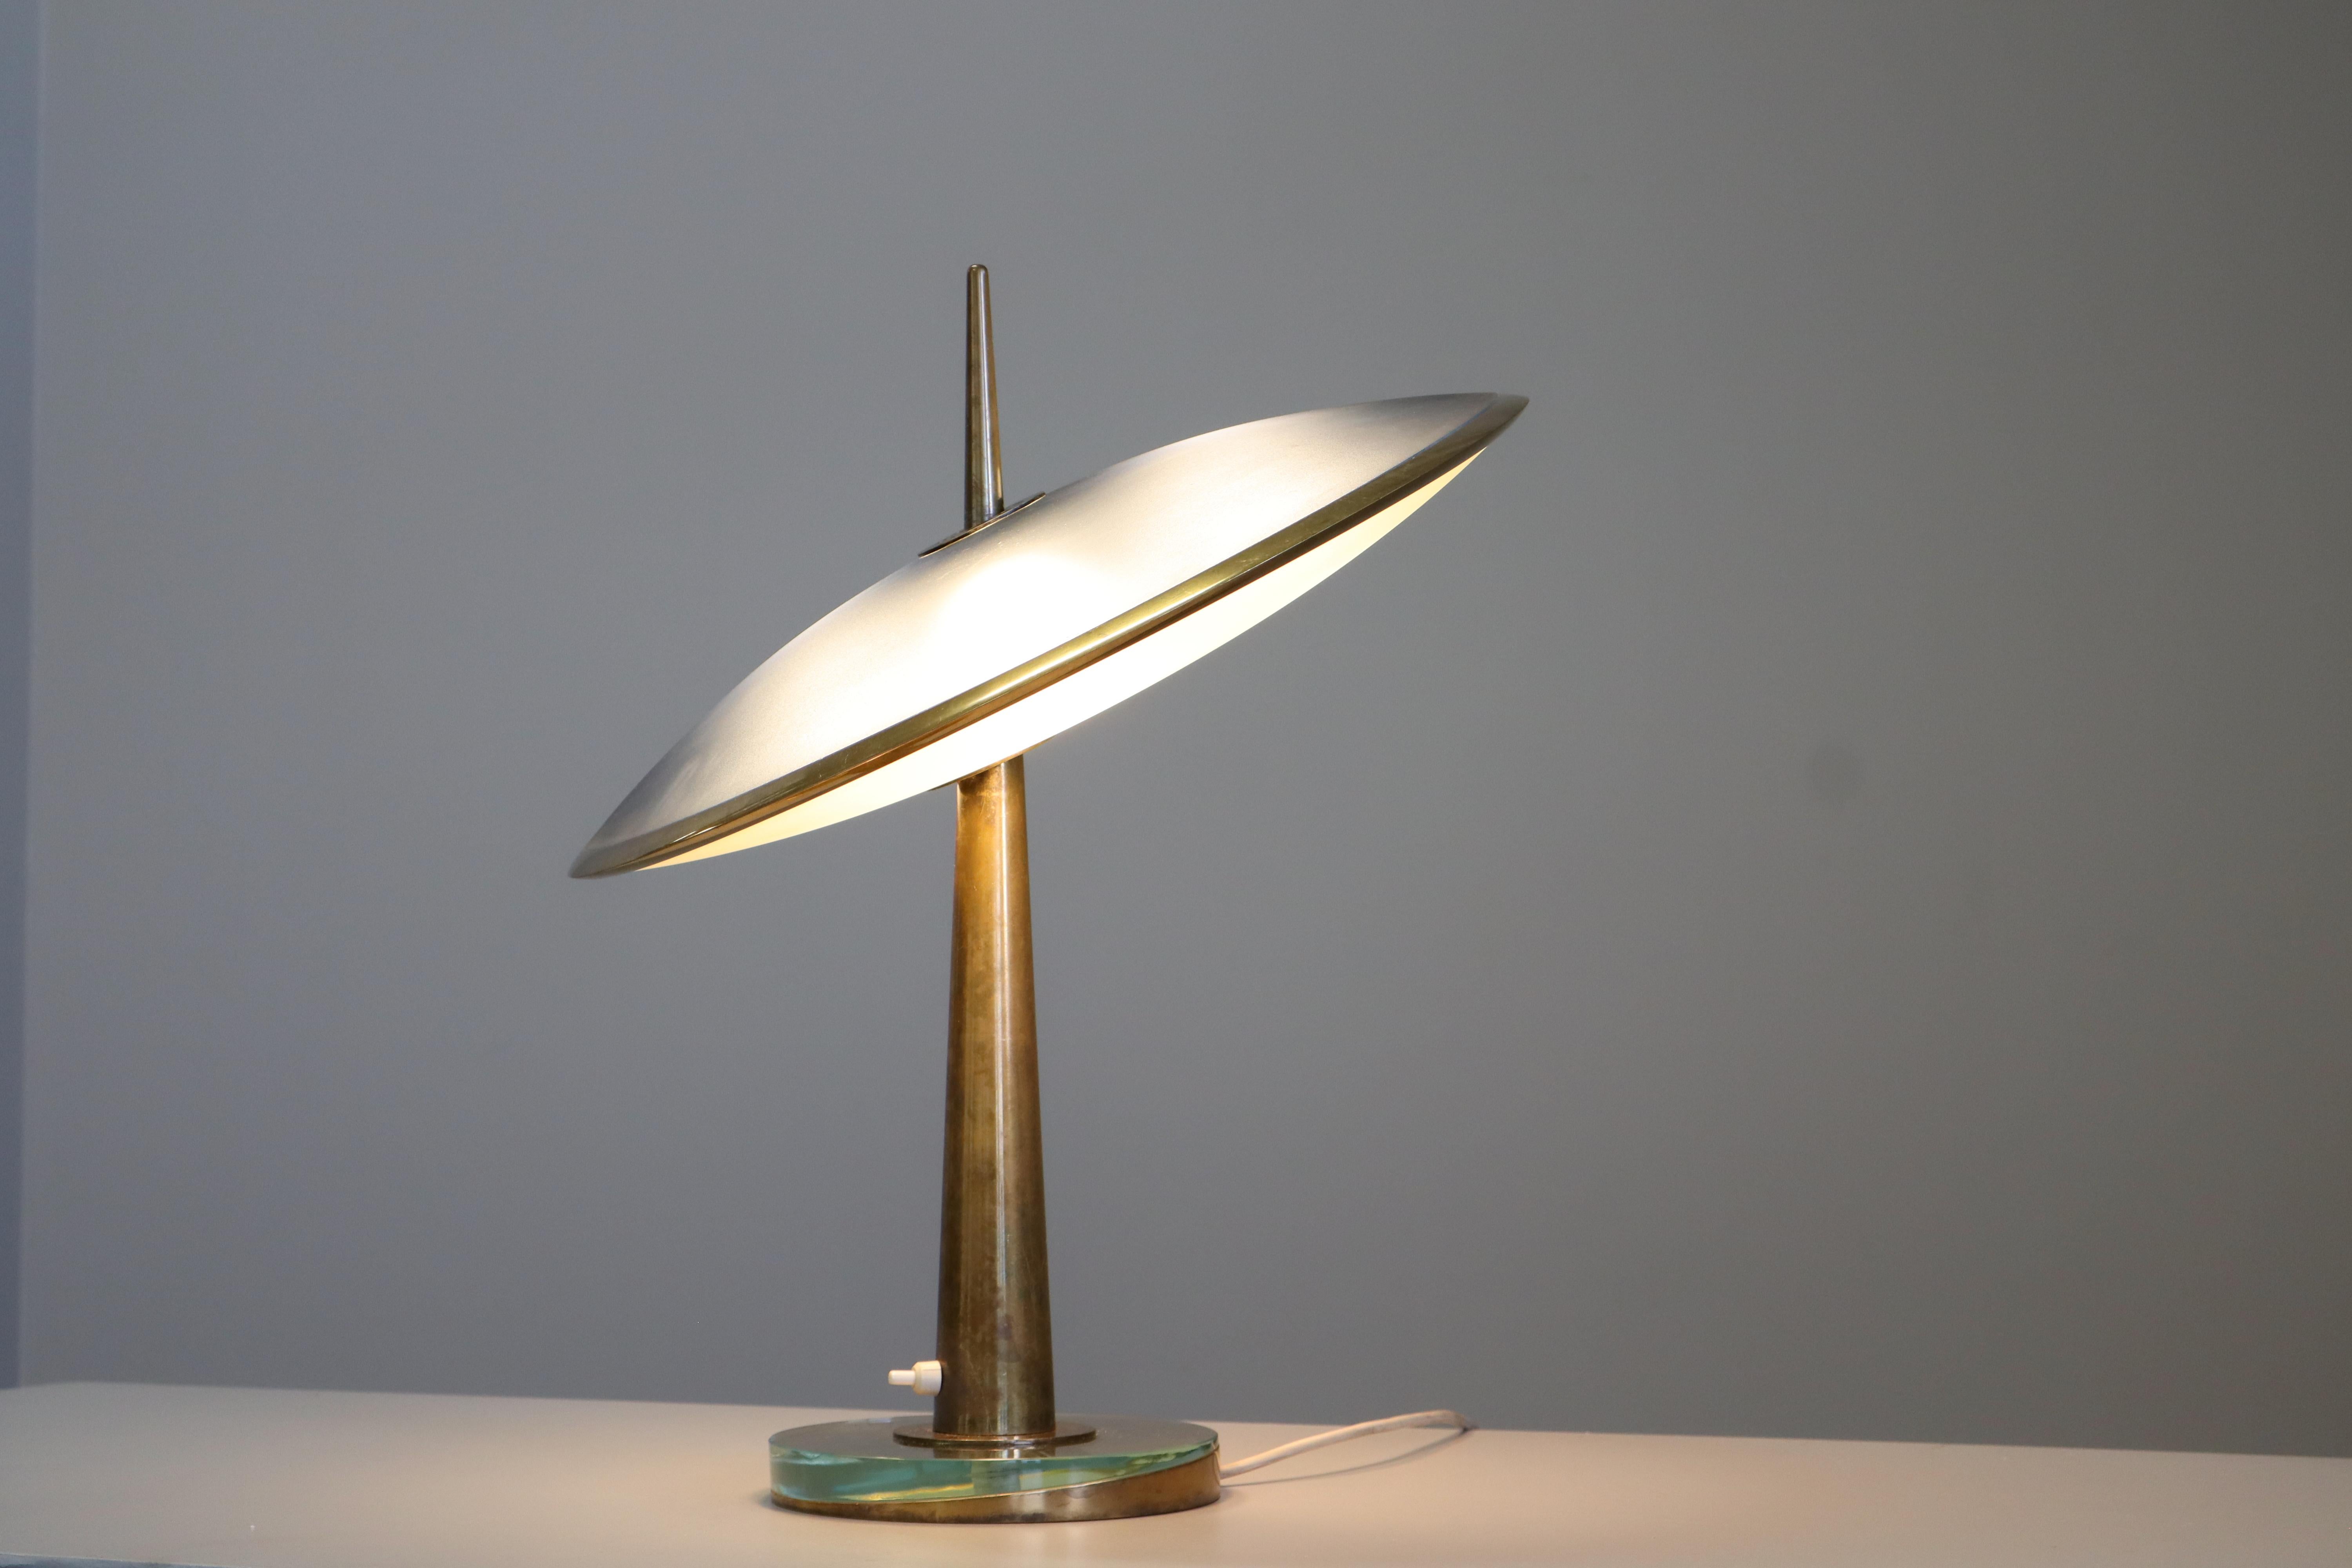 Rare lampe Max Ingrand Fontana Arte Disco Volante Mod. 1538, Italie, 1955 . 
Formidable lampe de table iconique avec de nombreux détails frappants. Max Ingrand, directeur artistique d'Arte Fontana arte entre 1954 et 1964, est l'homme des détails